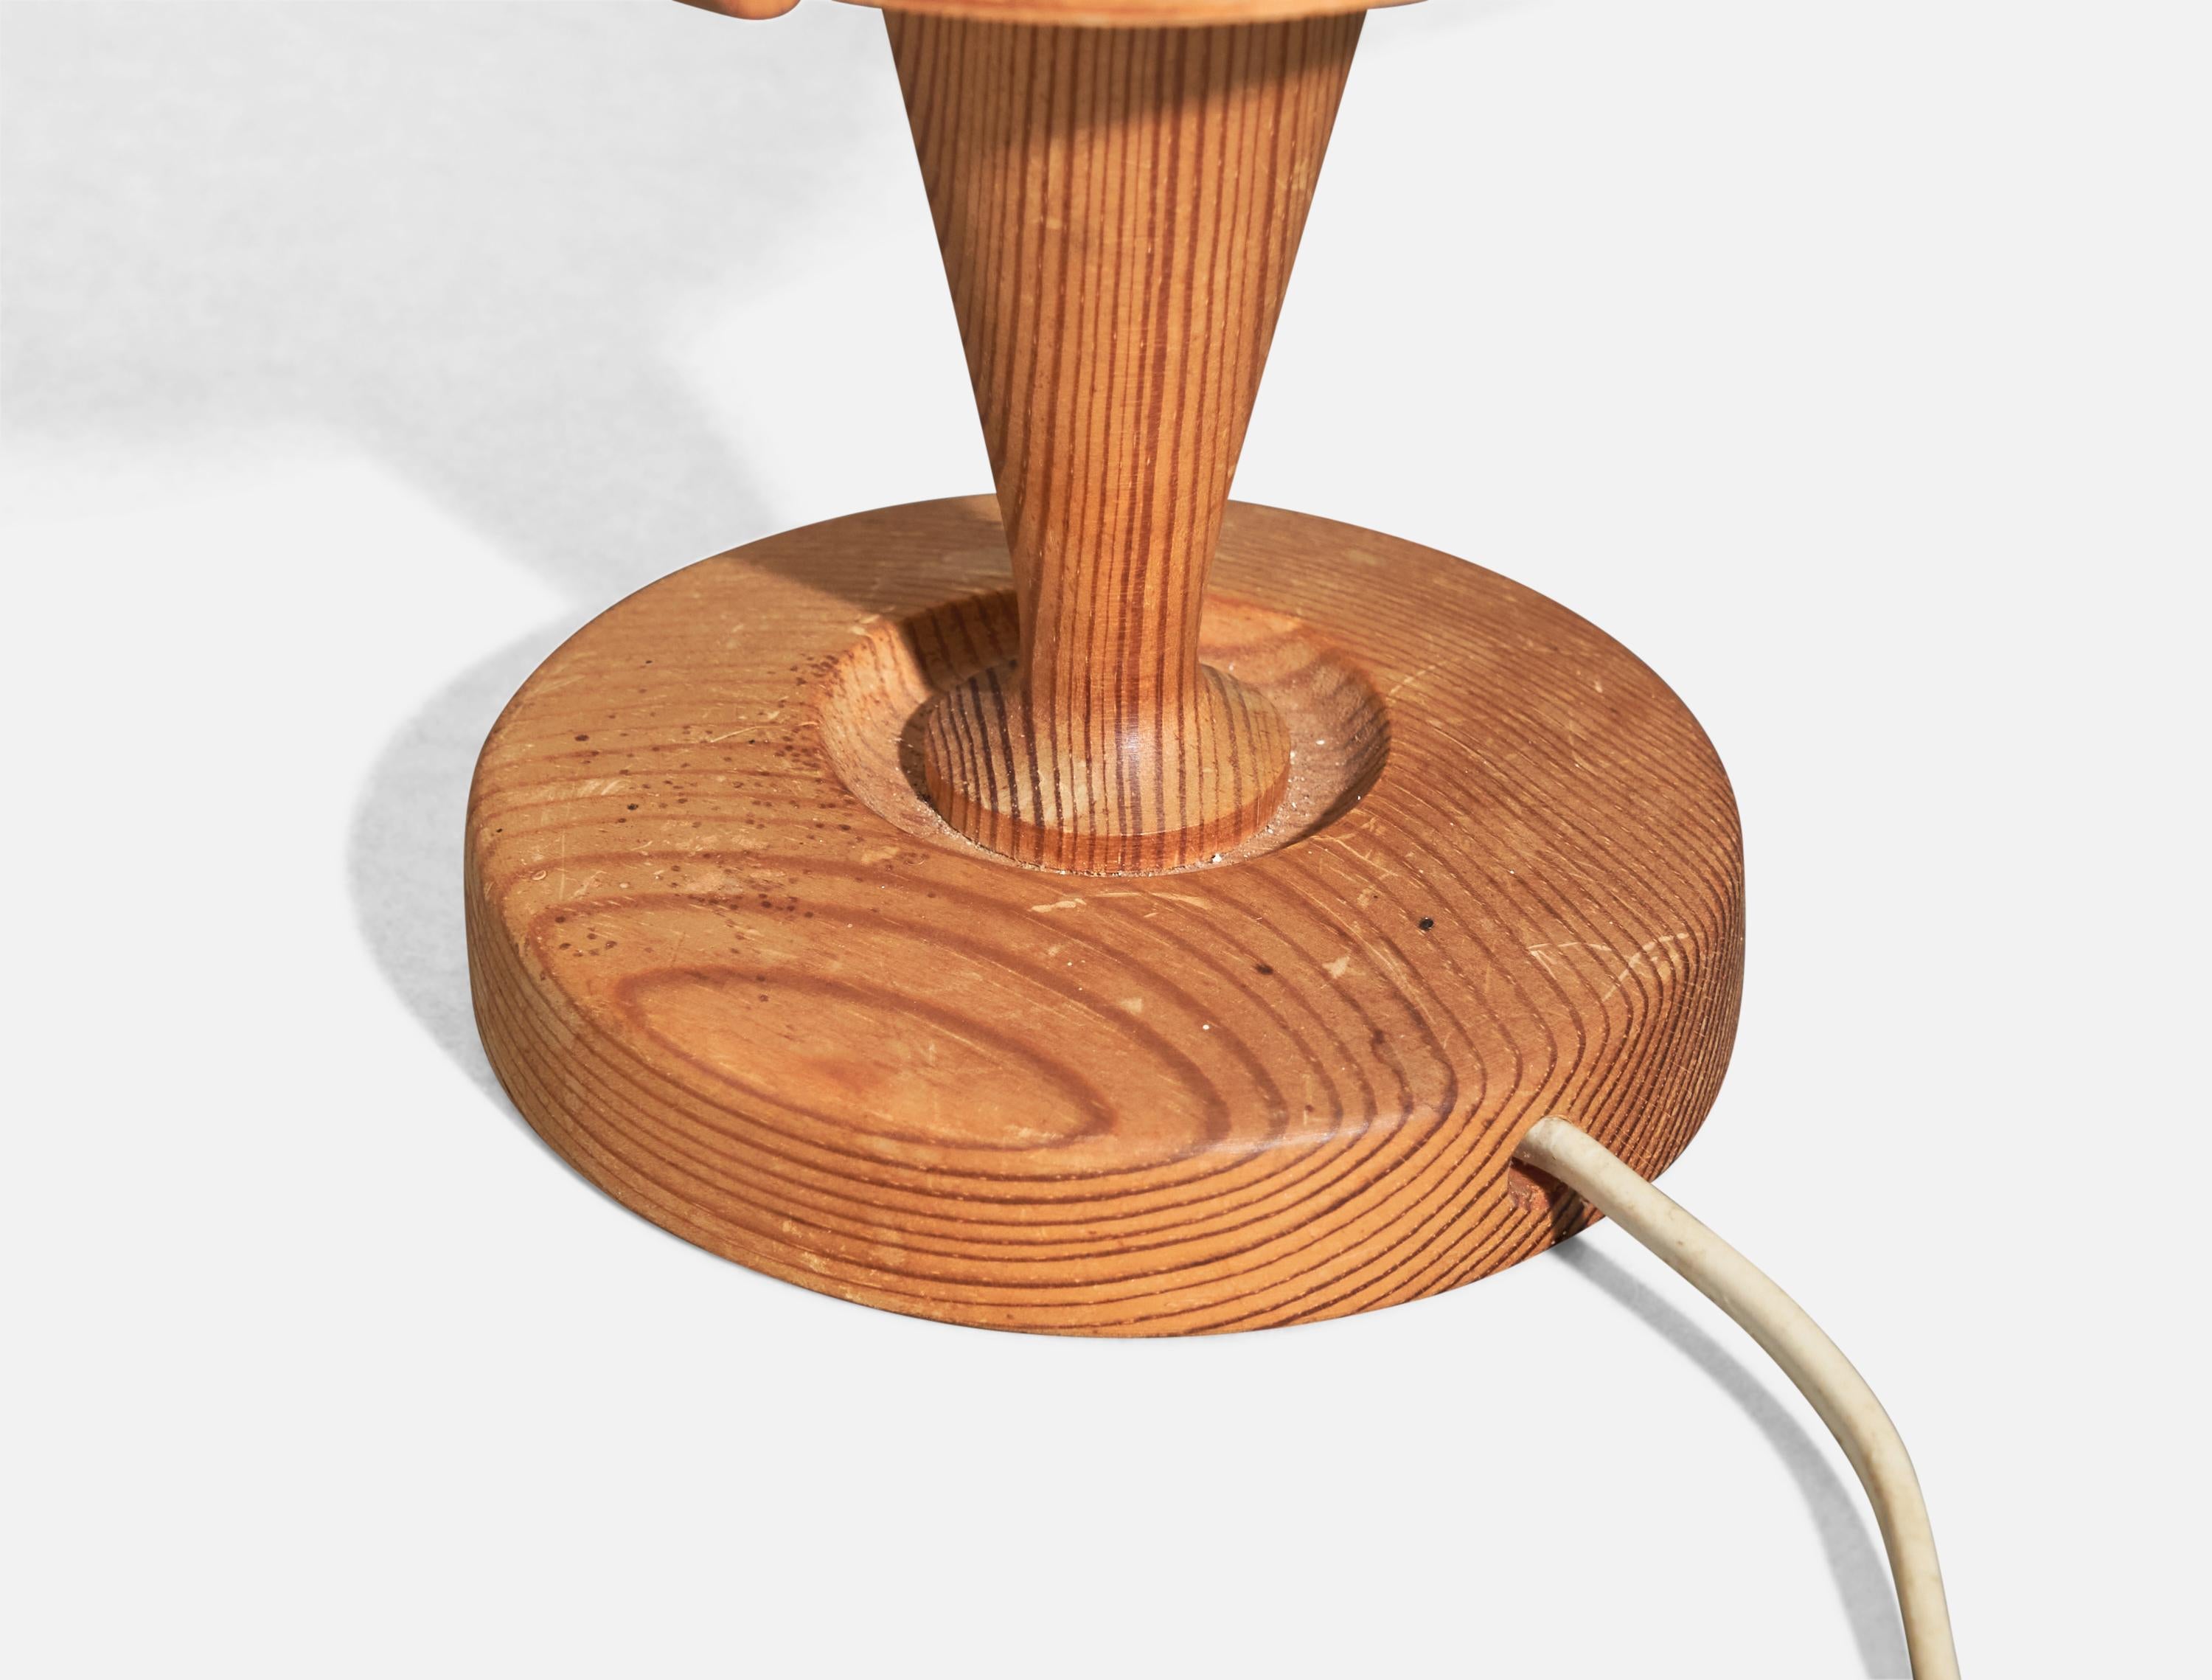 Lampe de table en pin et placage de pin moulé, conçue par Hans-Agne Jakobsson et produite par Elysett, Suède, années 1970.

La douille accepte les ampoules E-14.

Il n'y a pas de puissance maximale indiquée sur le luminaire.